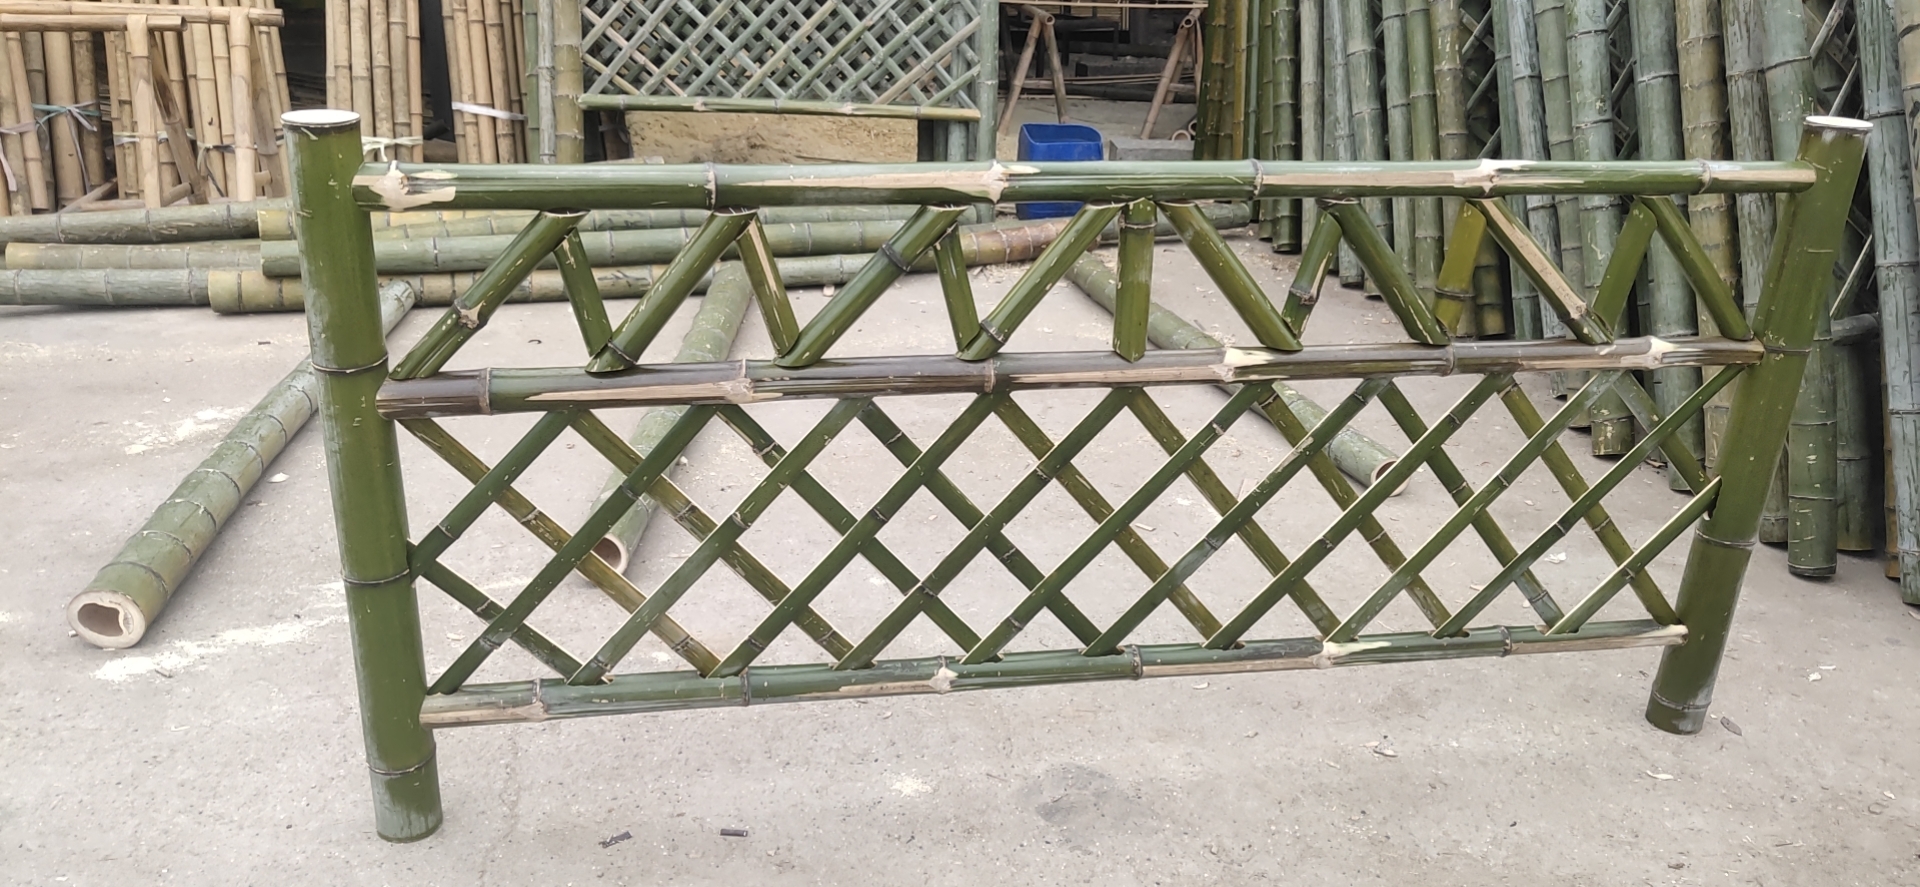 汕尾 竹篱笆 竹子栅栏九江湖口绿化护栏仿竹护栏